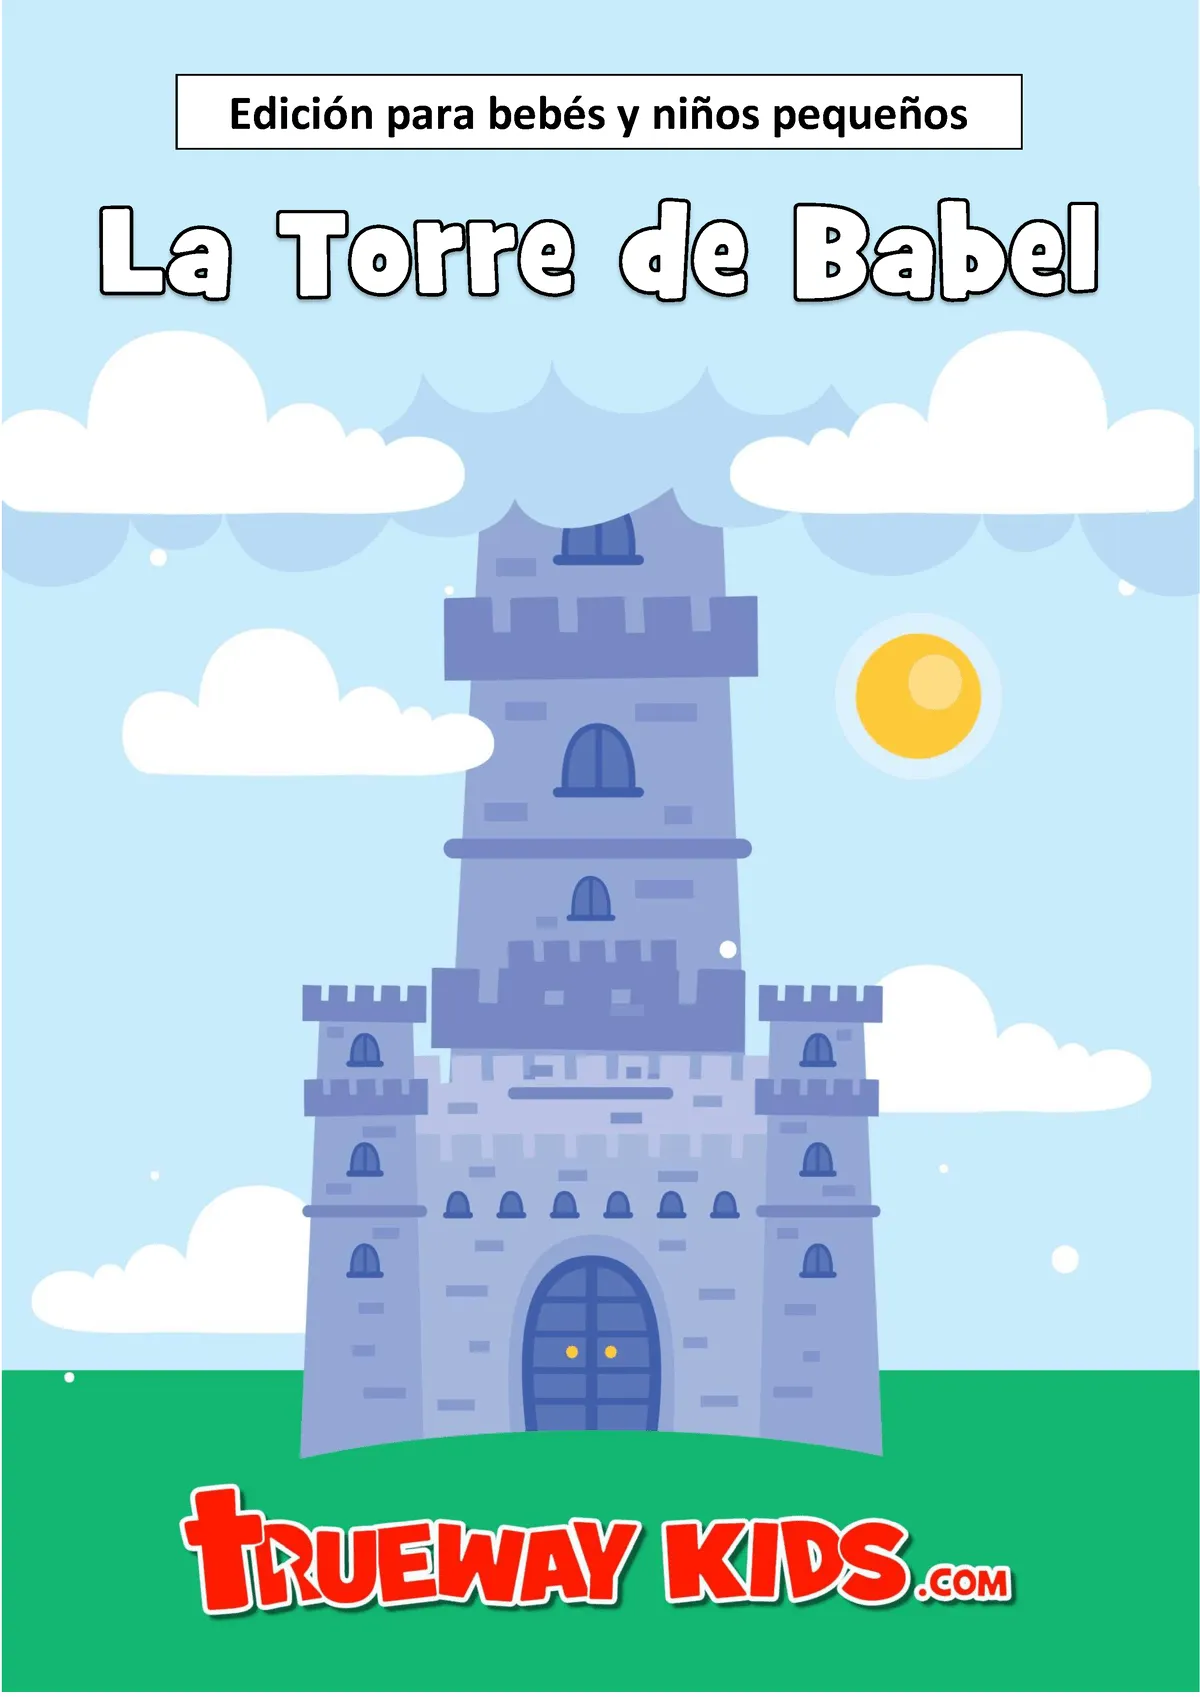 OT06 La torre de Babel - bebes - Edición para bebés y niños pequeños  Historia La Torre de Babel - Studocu